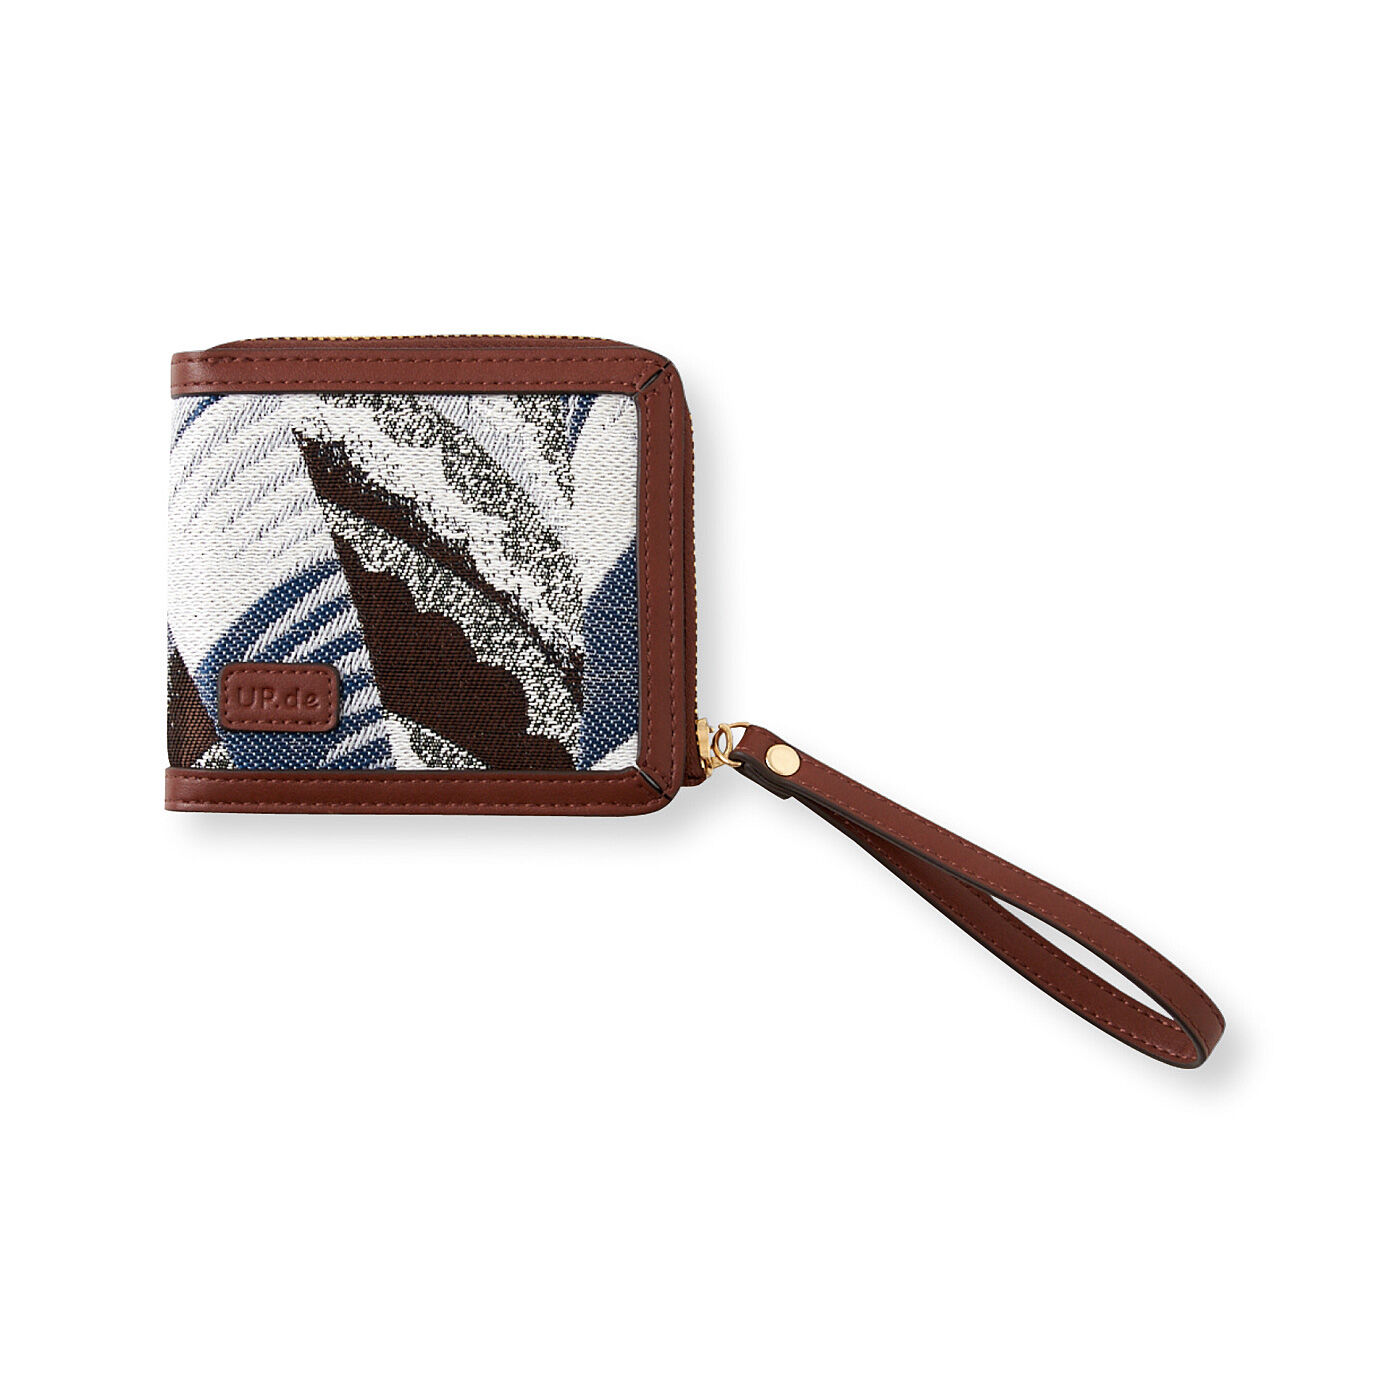 Real Stock|UP.de　がばっと開いてさっと取り出せる　織柄が美しい二つ折り財布|〈1. ブラウン〉